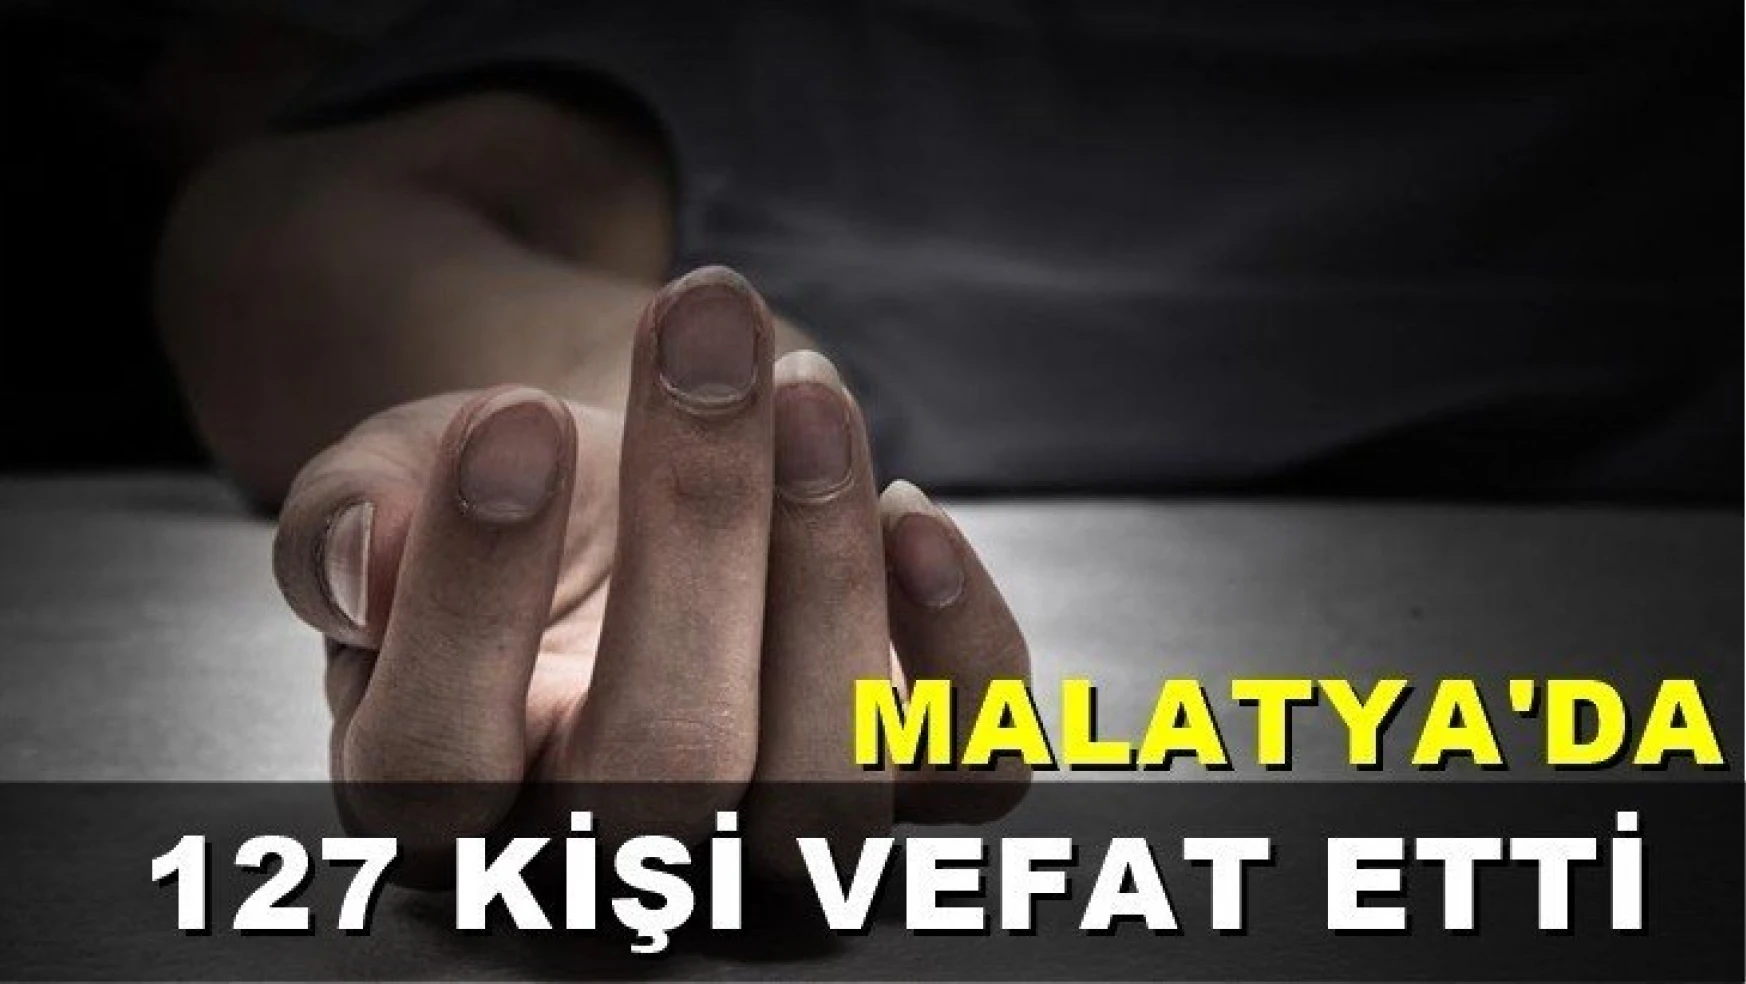 Malatya'da 127 kişi vefat etti